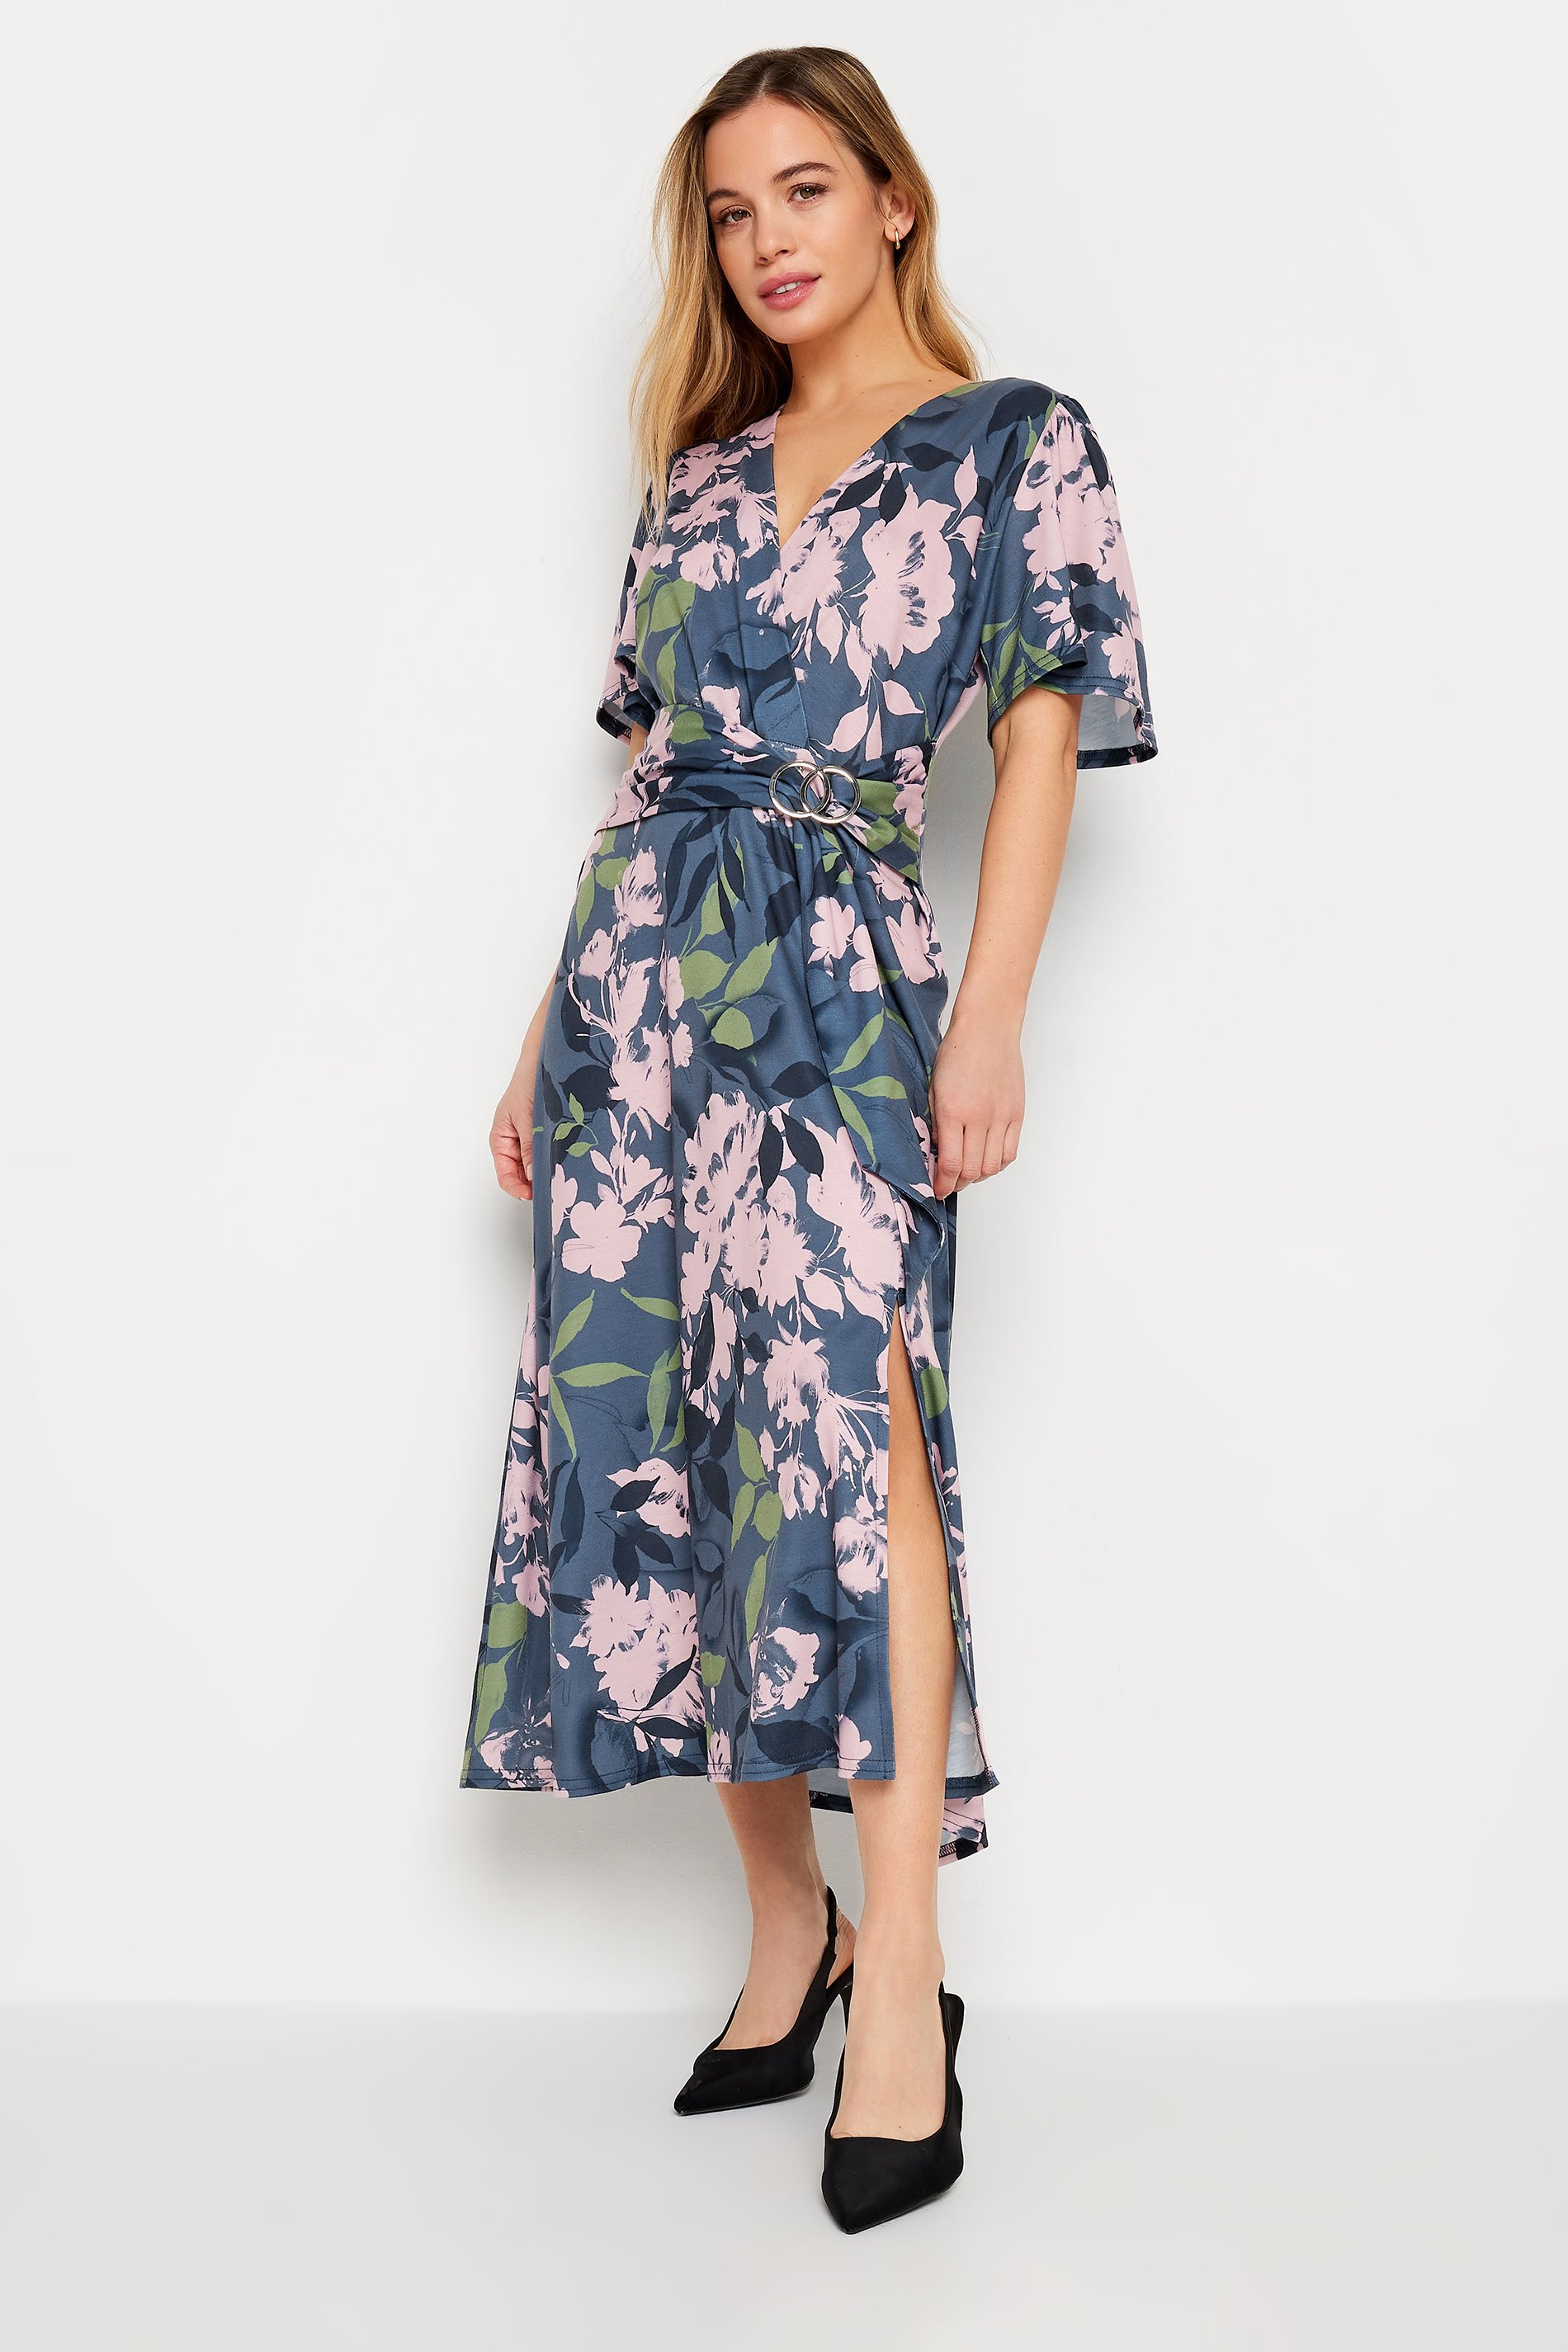 M&Co Petite Blue Floral Belted Wrap Dress | M&Co 1